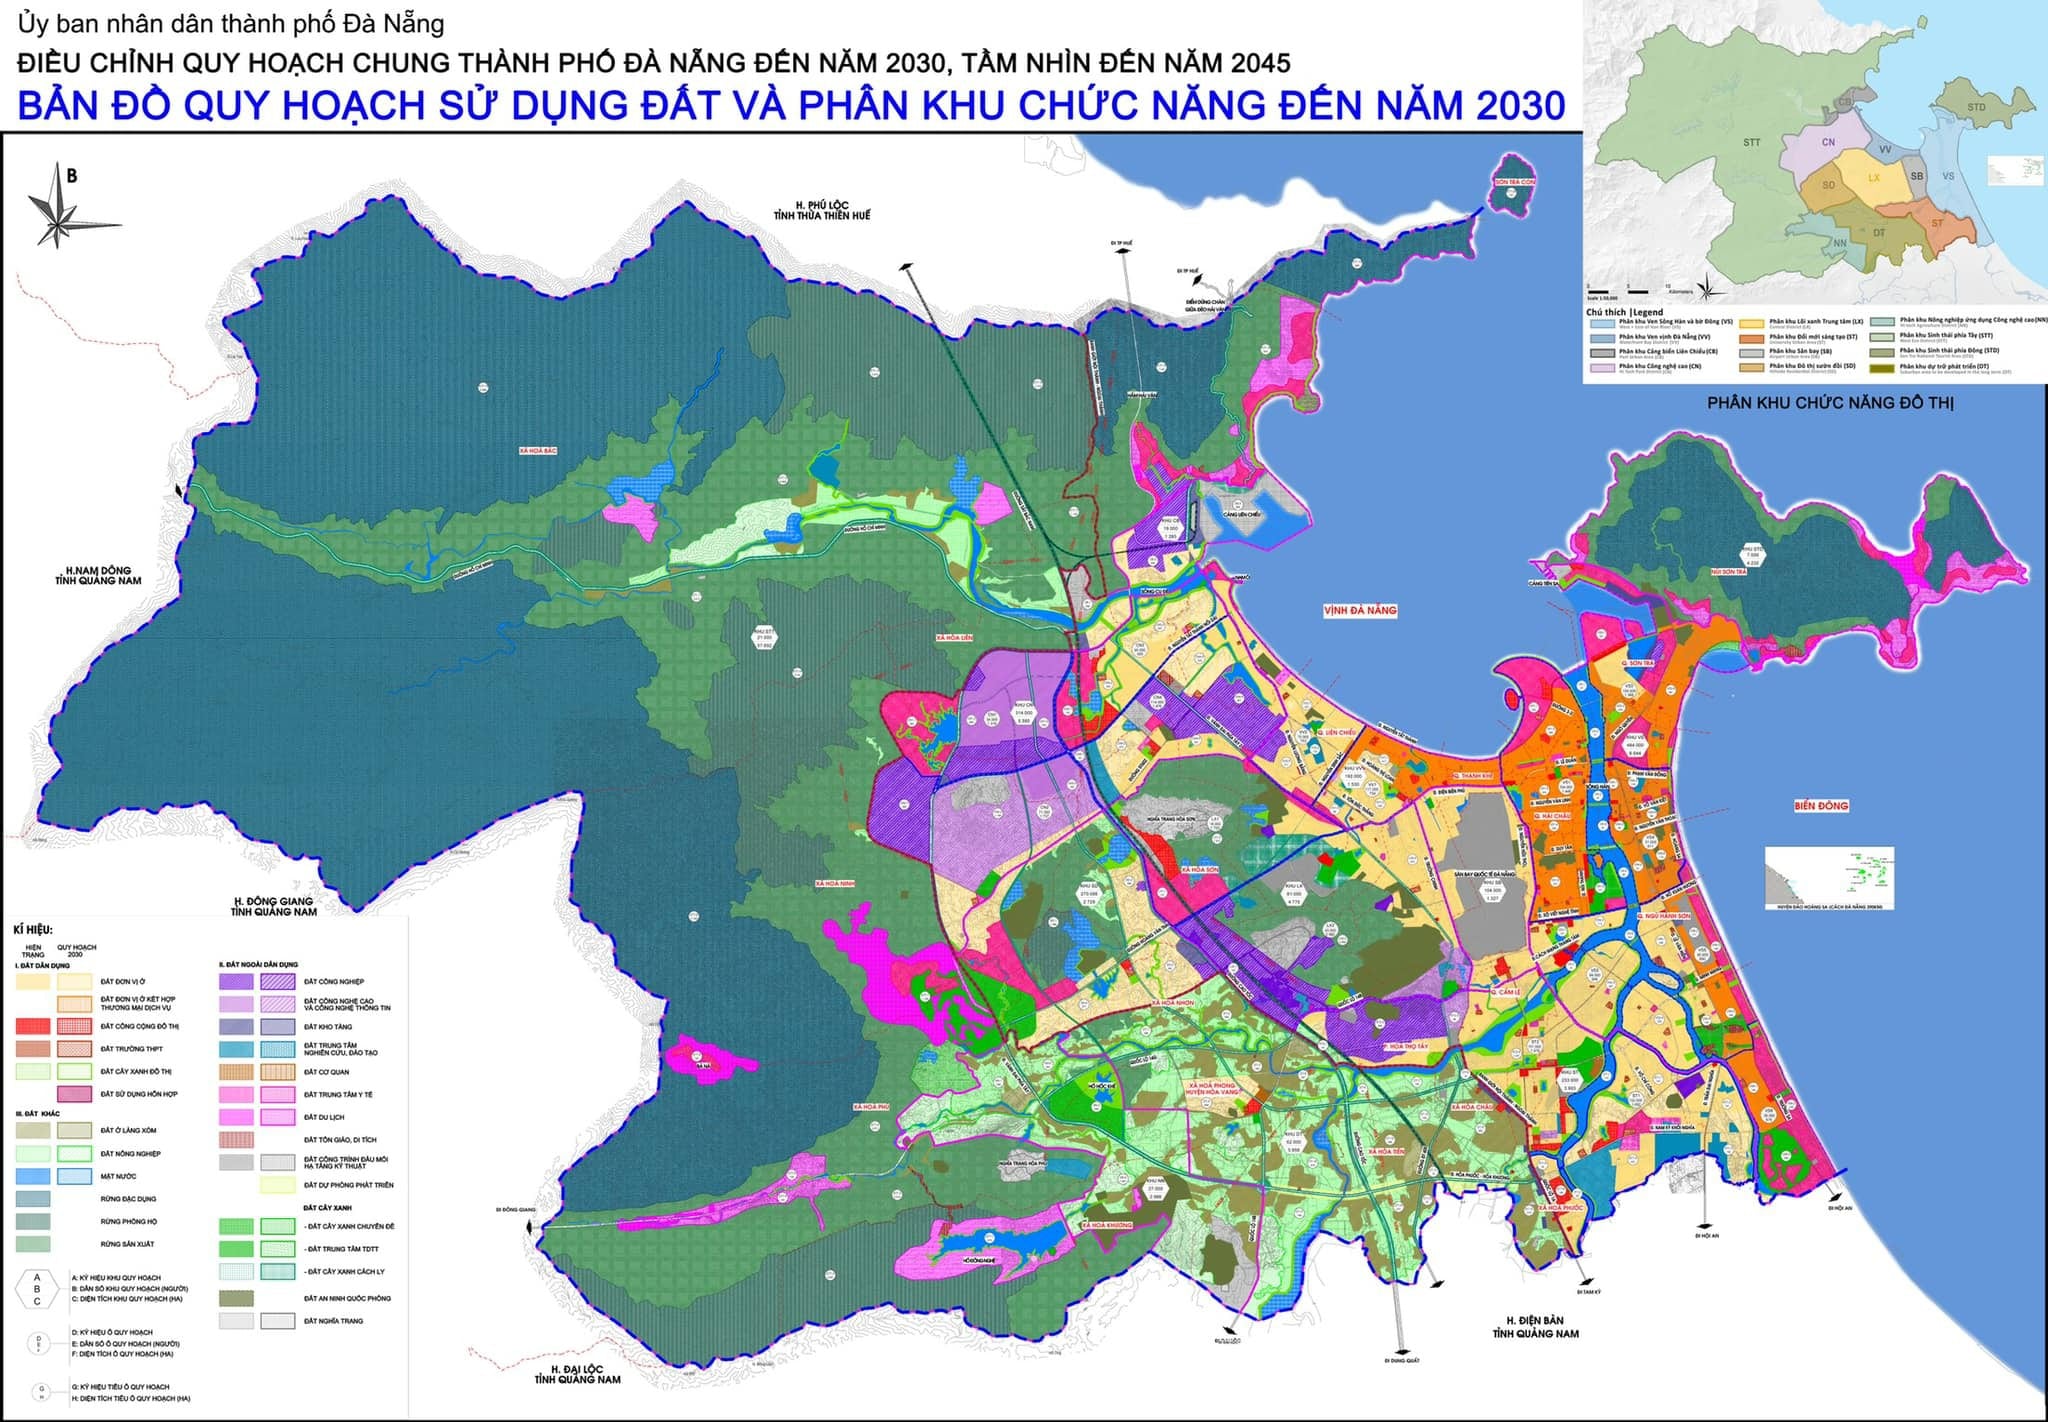 Bản đồ điều chỉnh Quy hoạch Thành phố Đà Nẵng đến năm 2030 tầm nhìn năm 2045